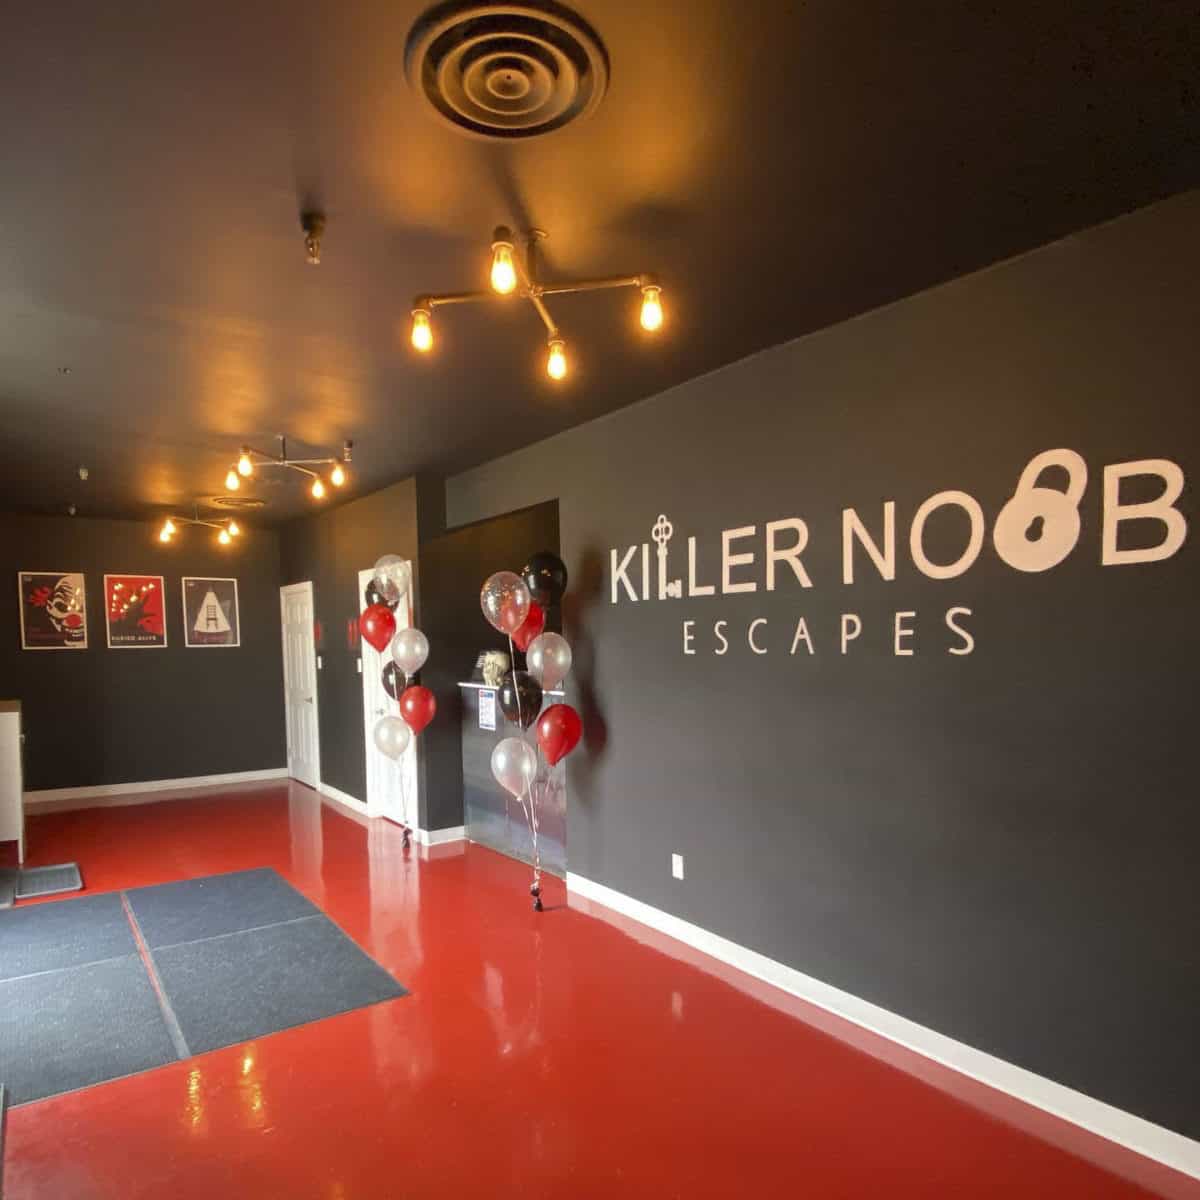 Killer Noob Escapes